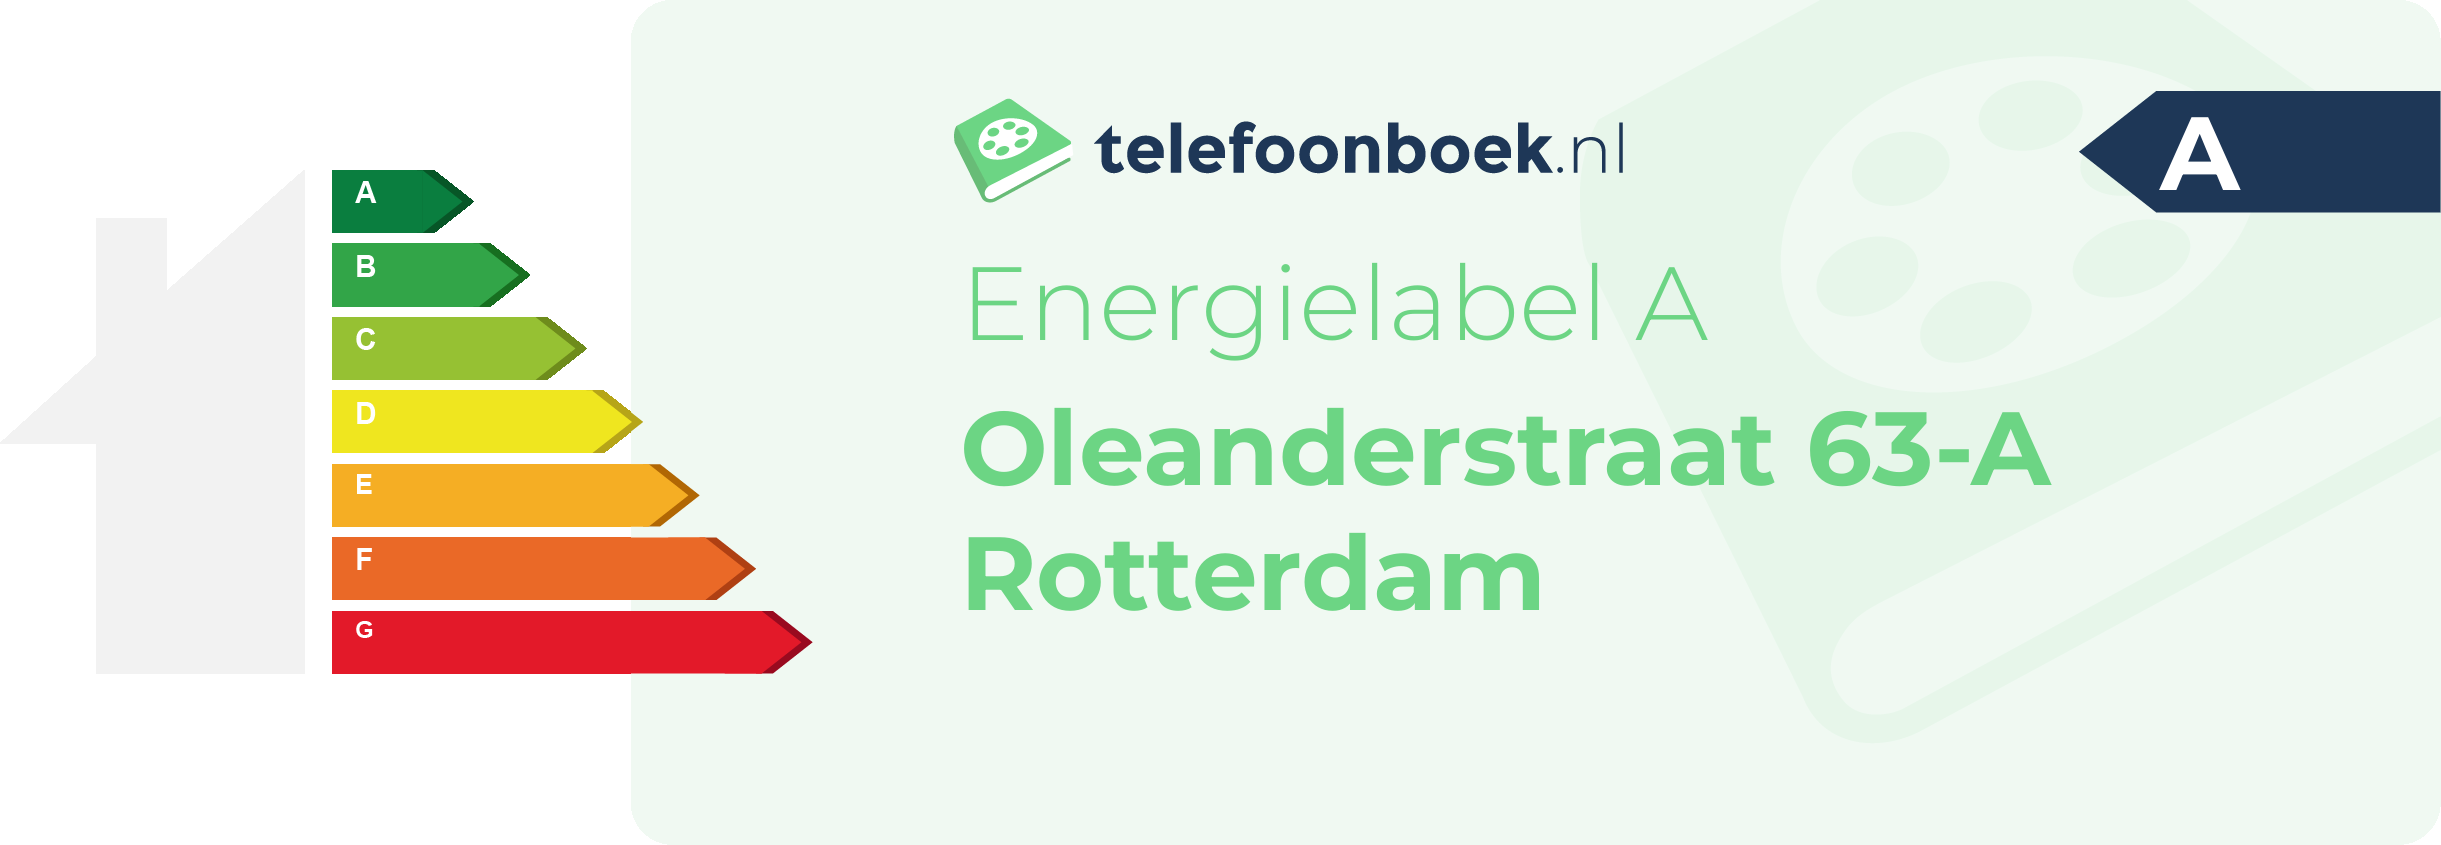 Energielabel Oleanderstraat 63-A Rotterdam